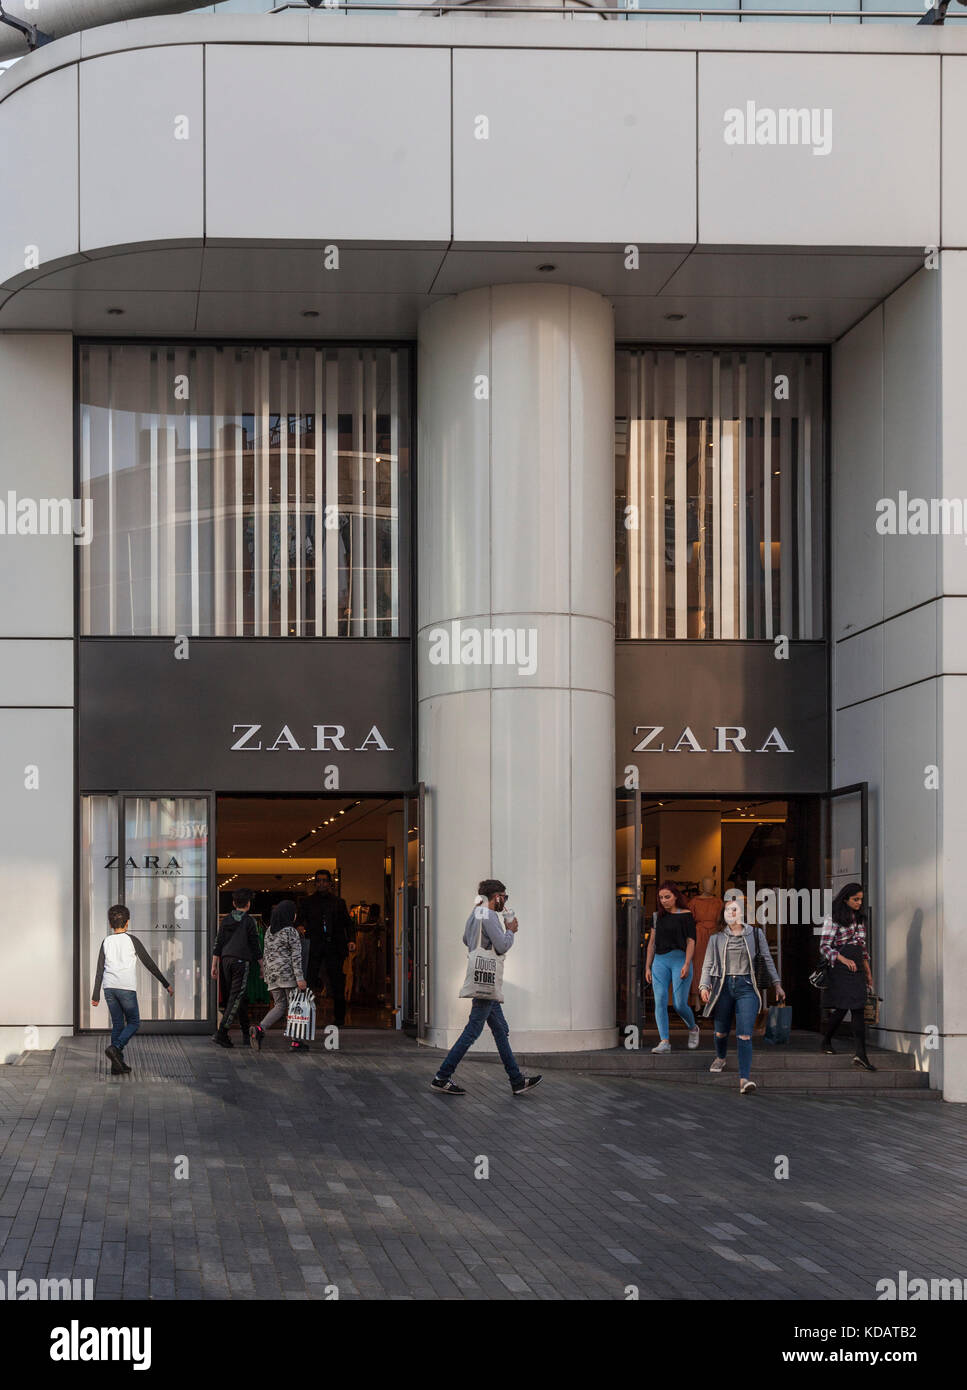 Haupteingang der Zara Einzelhandel Mode Shop in Rotunda Square,  Stierkampfarena, Birmingham, West Midlands, England, Großbritannien  Stockfotografie - Alamy